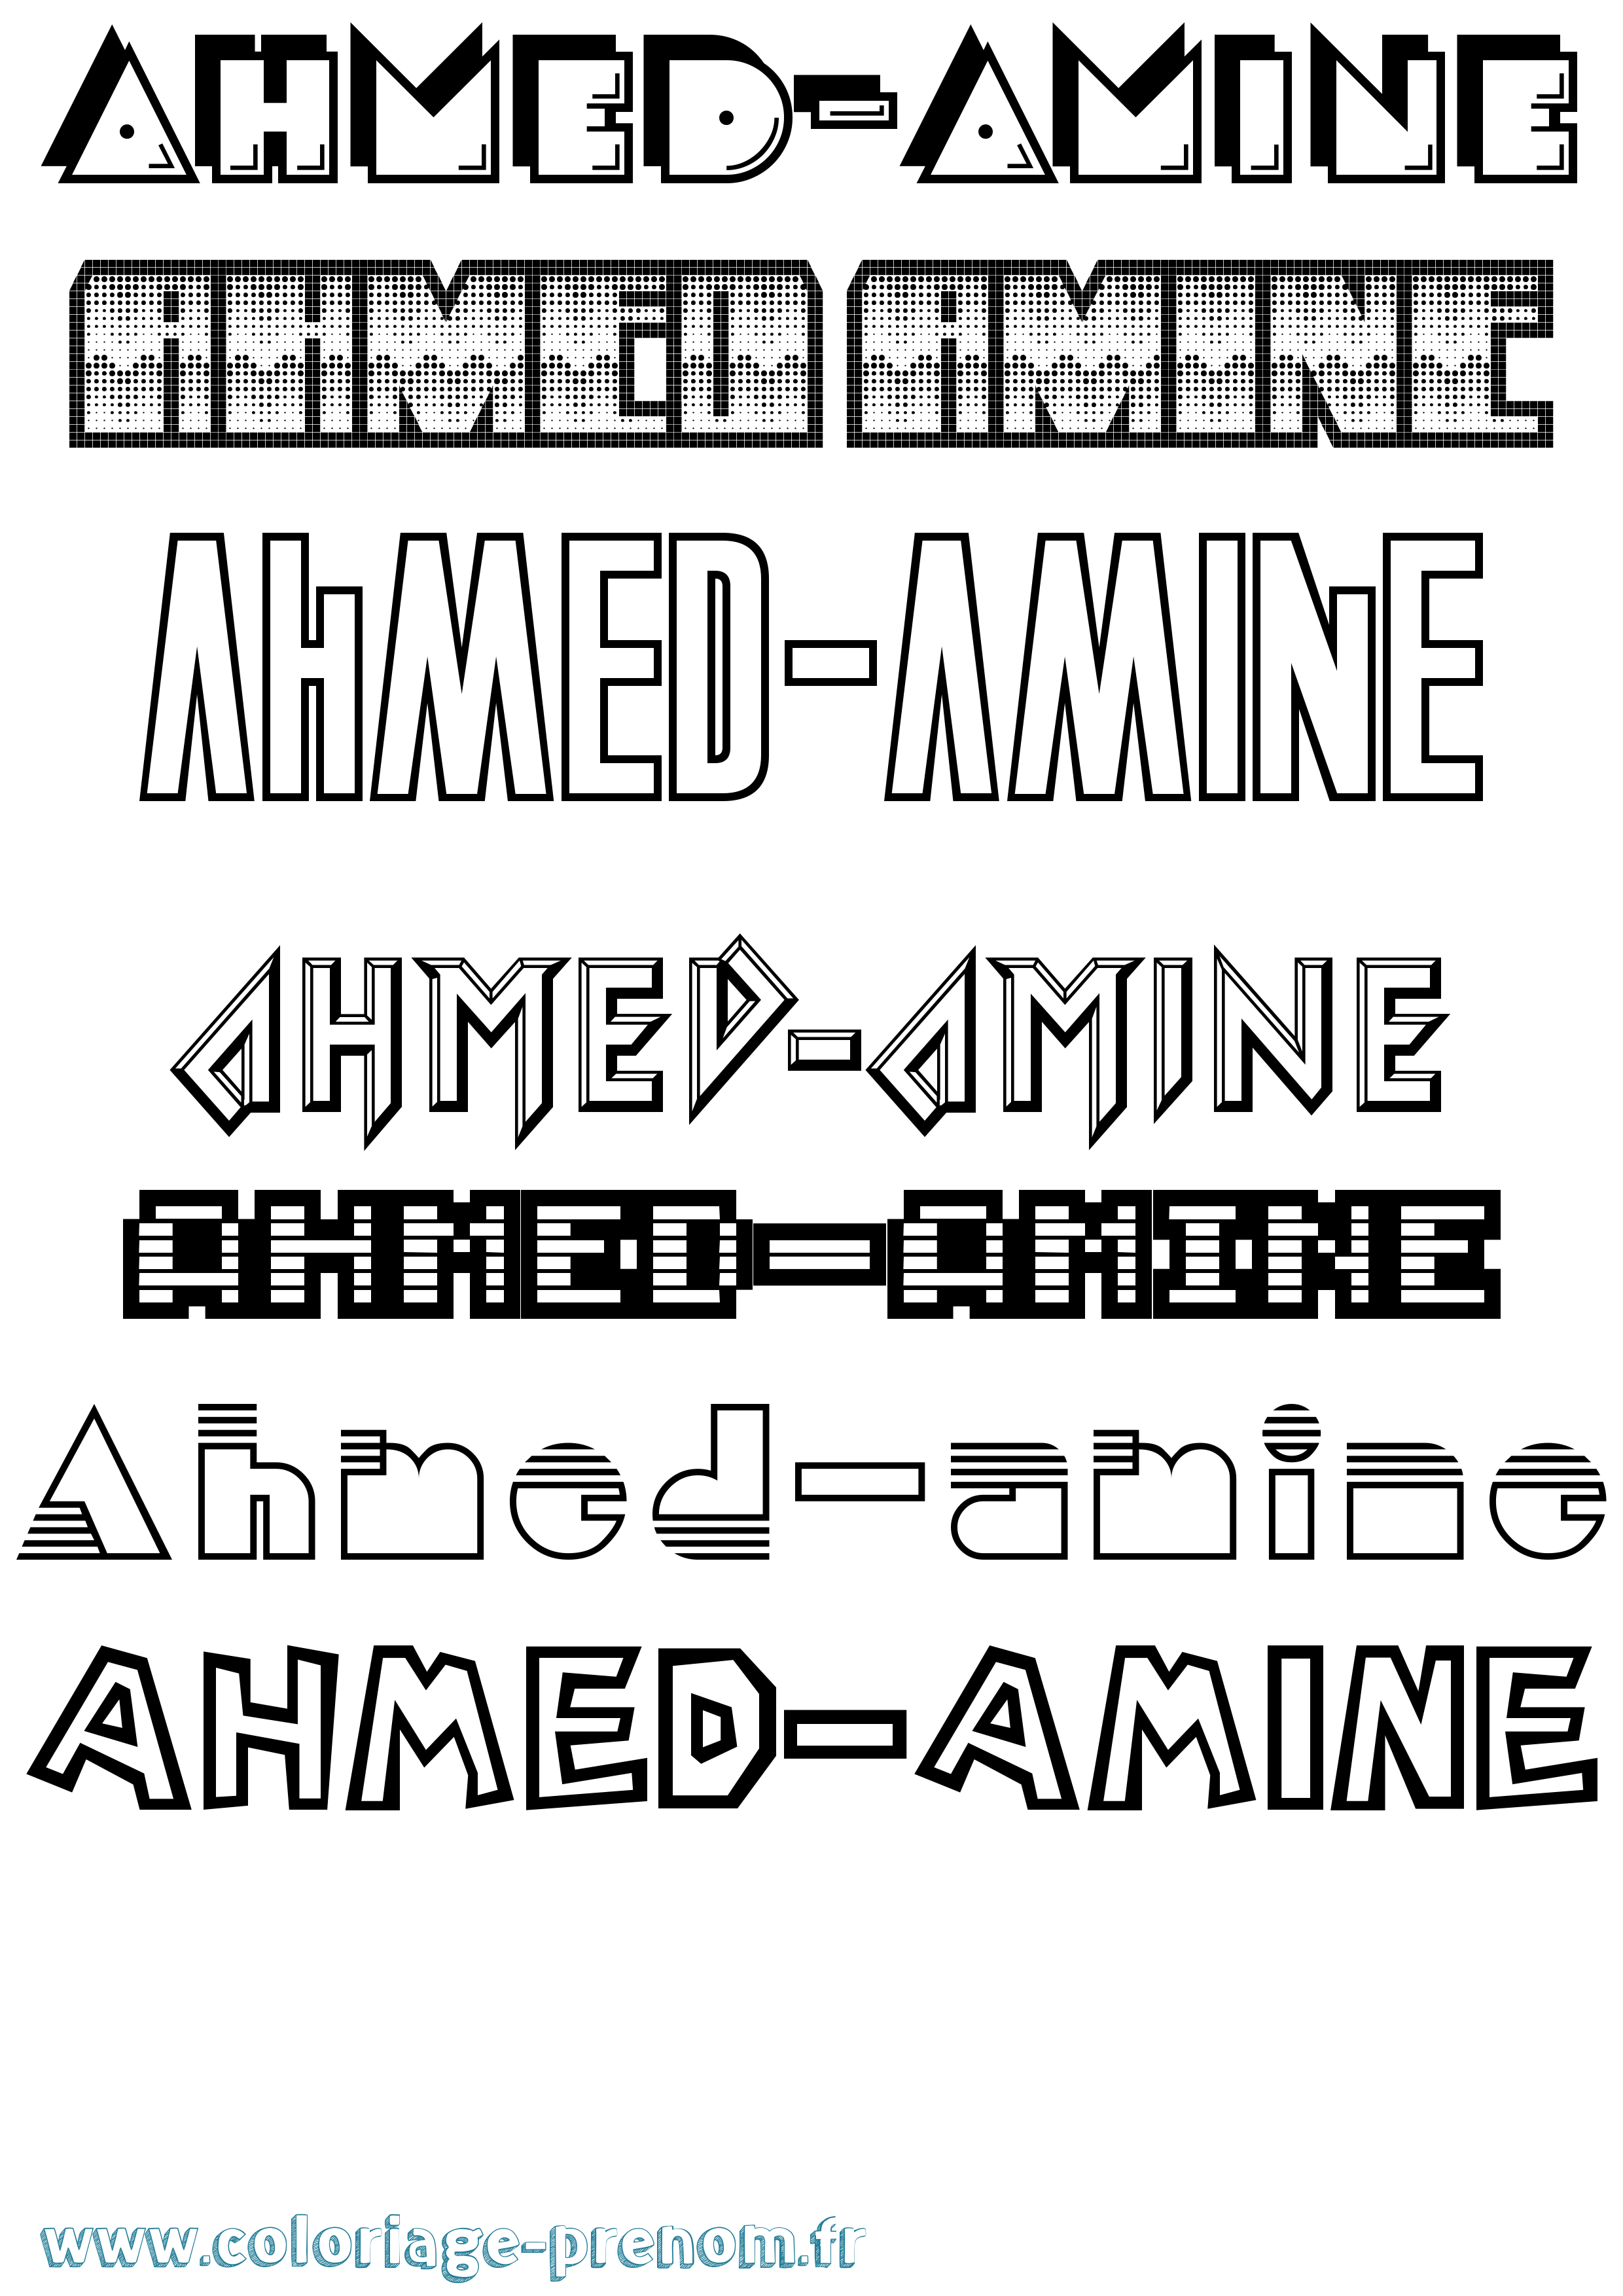 Coloriage prénom Ahmed-Amine Jeux Vidéos